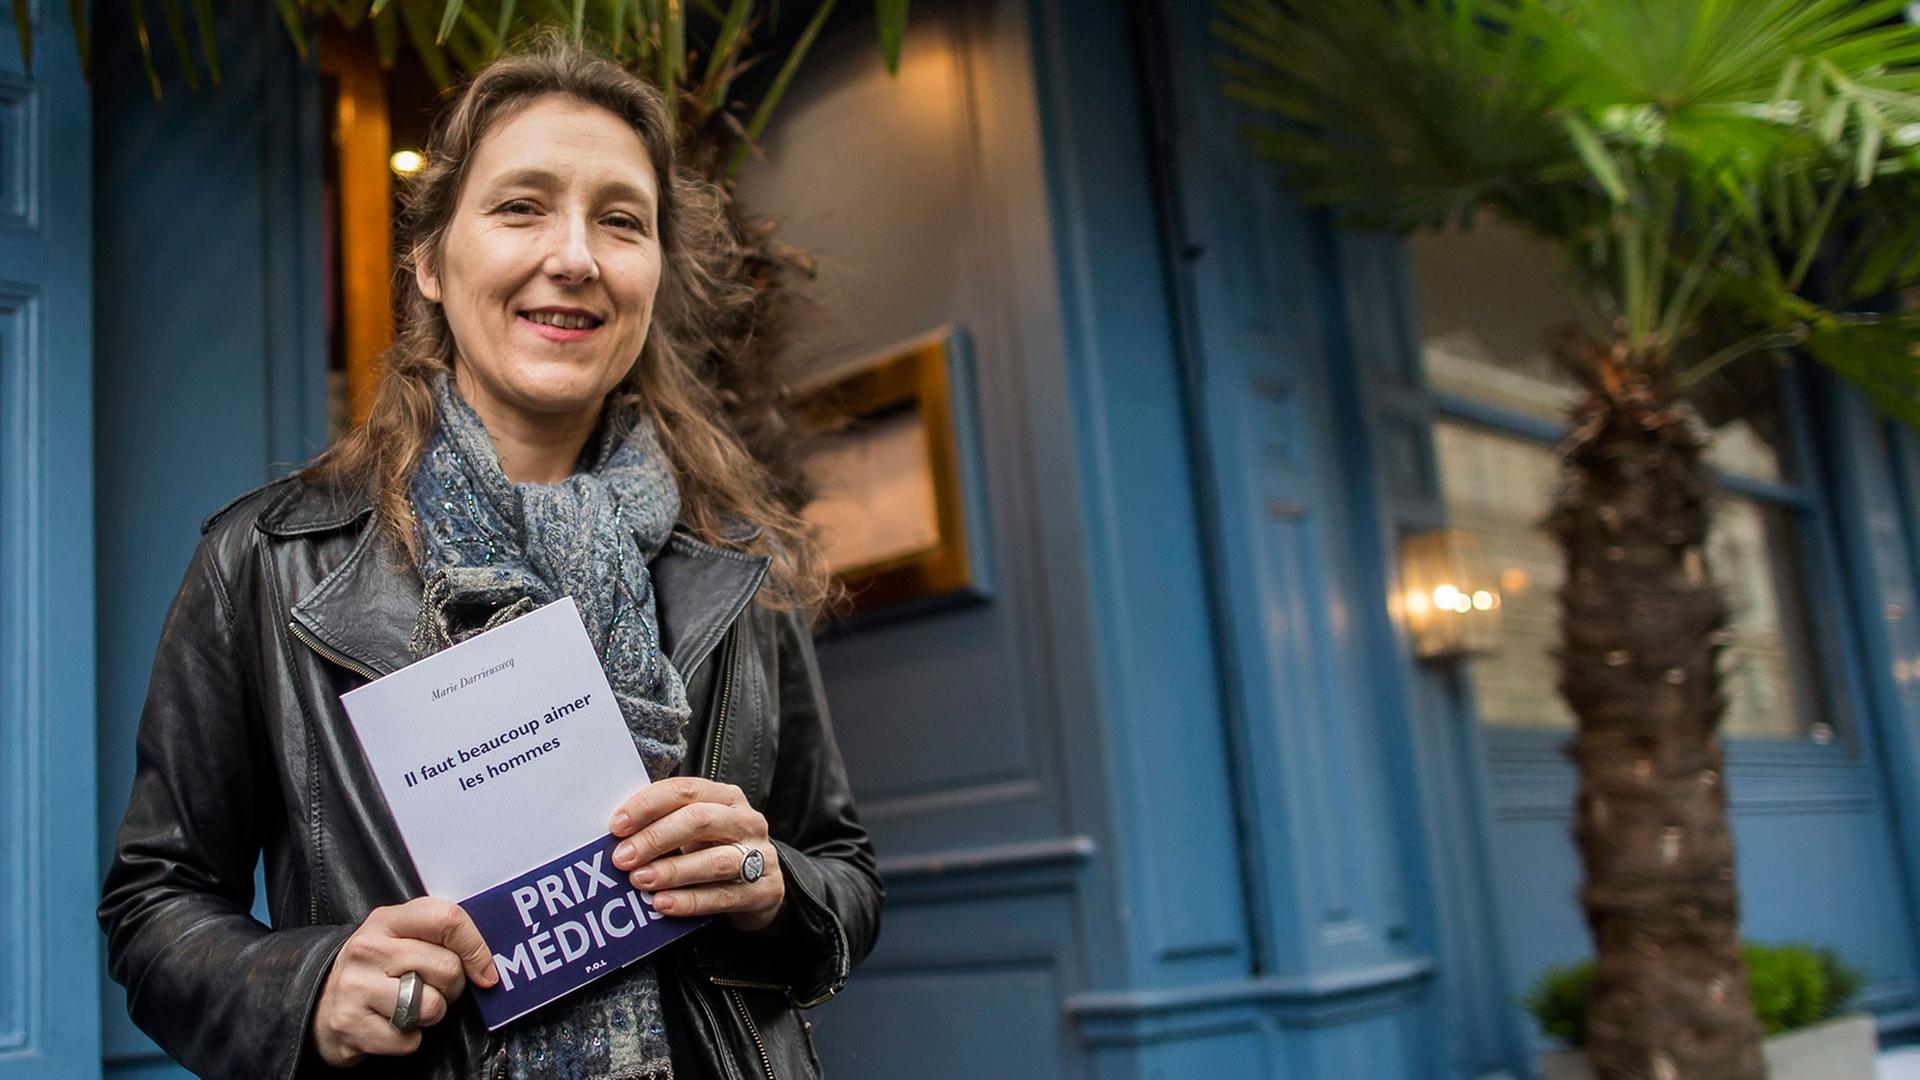 Die französische Autorin Marie Darrieussecq posiert am 12.11.2013 nach der Verleihung des Medicis Literary Prize für ihren Roman "Il faut beaucoup aimer les hommes" in Paris.